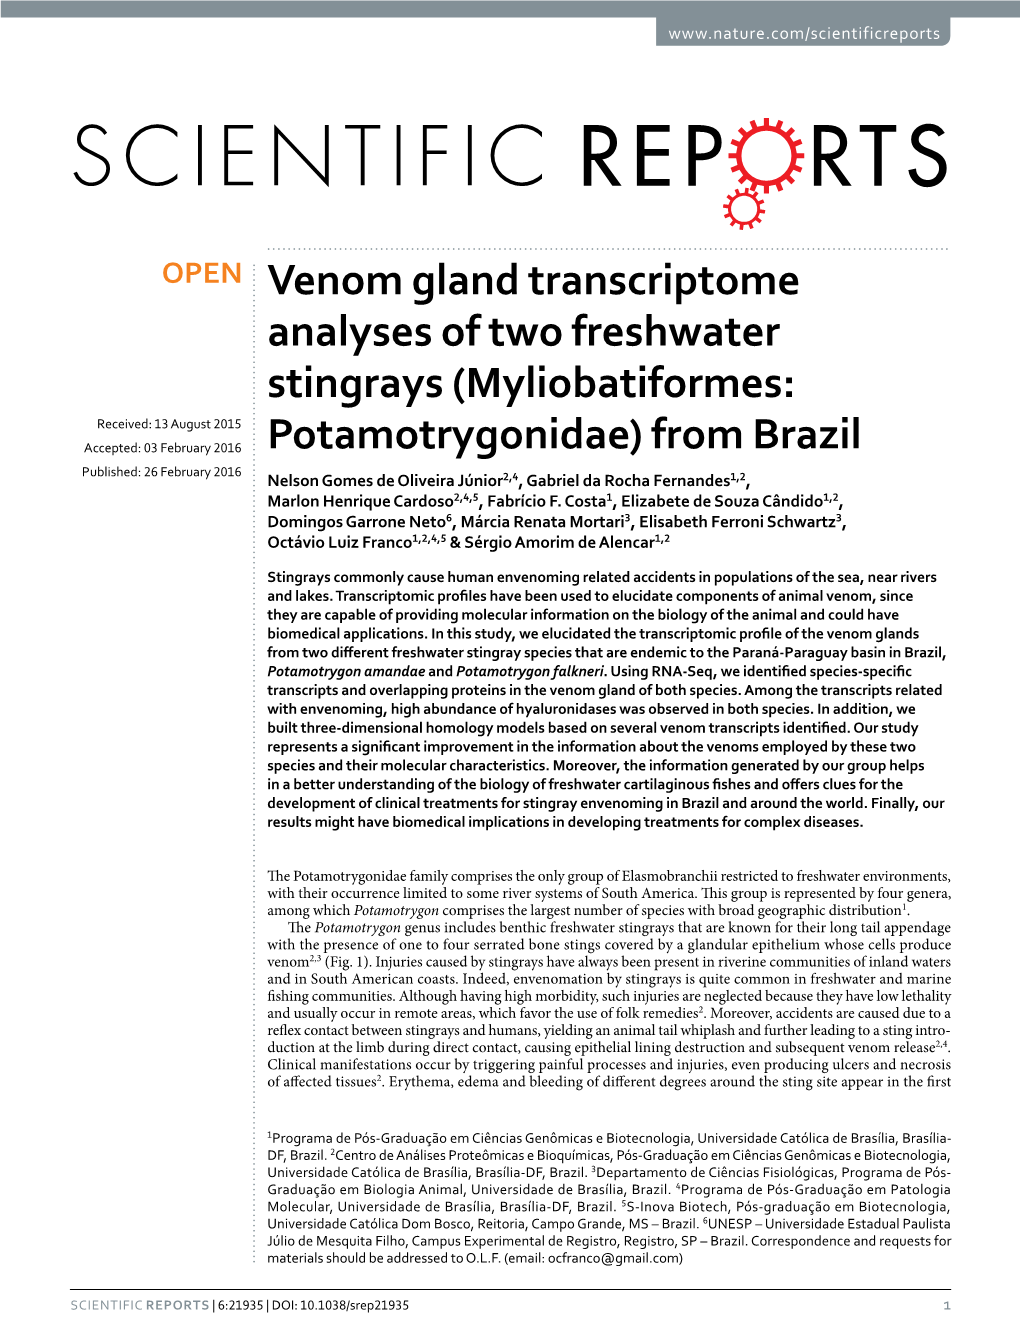 Venom Gland Transcriptome Analyses of Two Freshwater